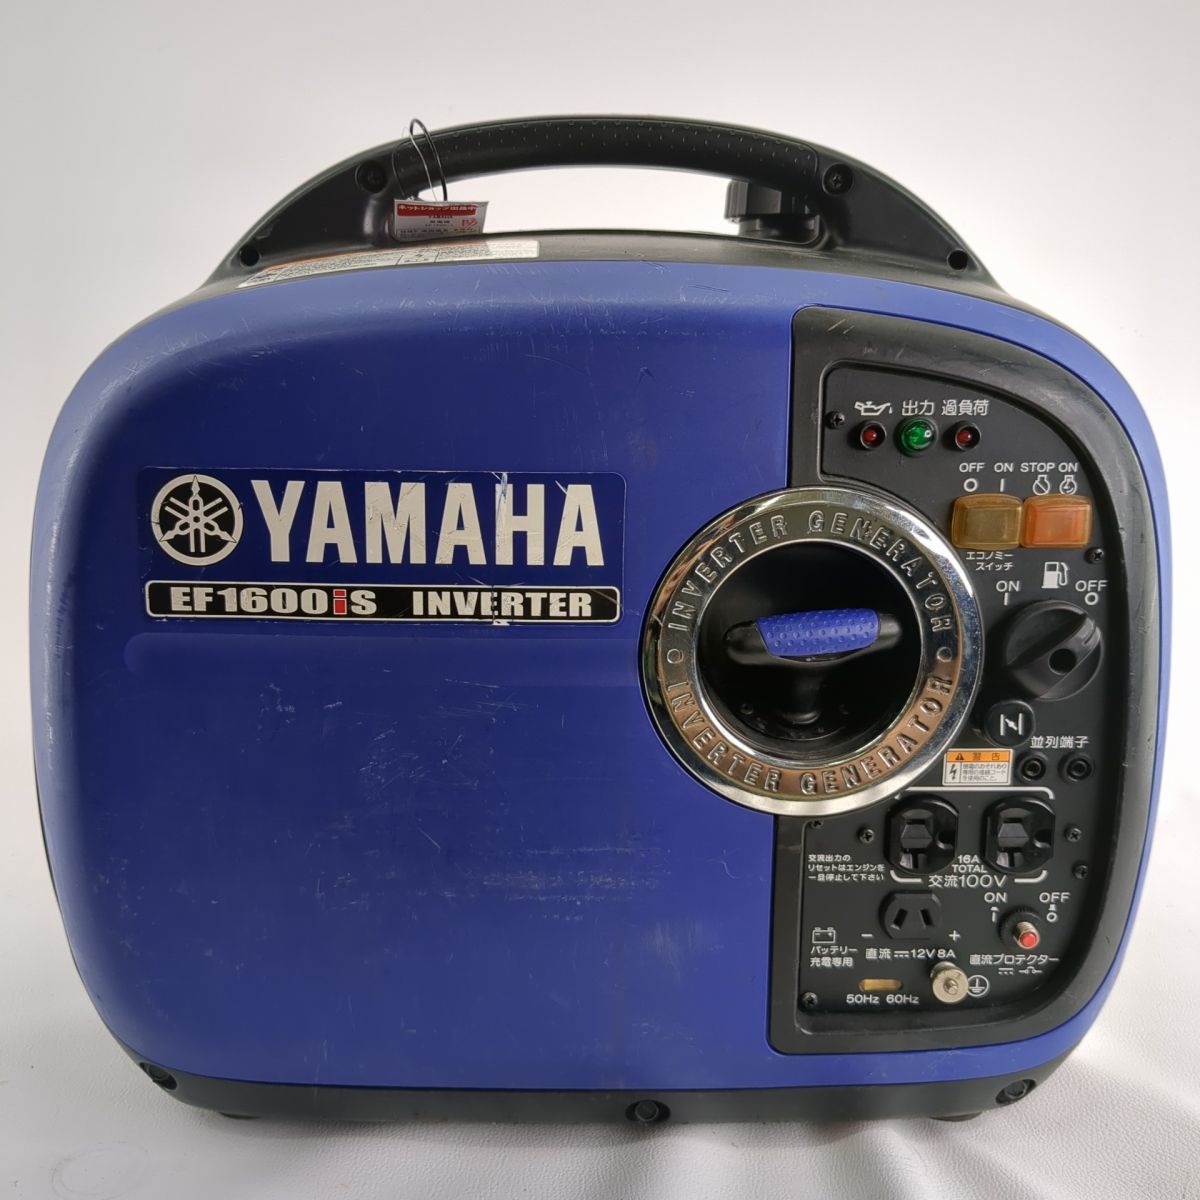 Yahoo!オークション -「発電機 ヤマハ 1600」の落札相場・落札価格